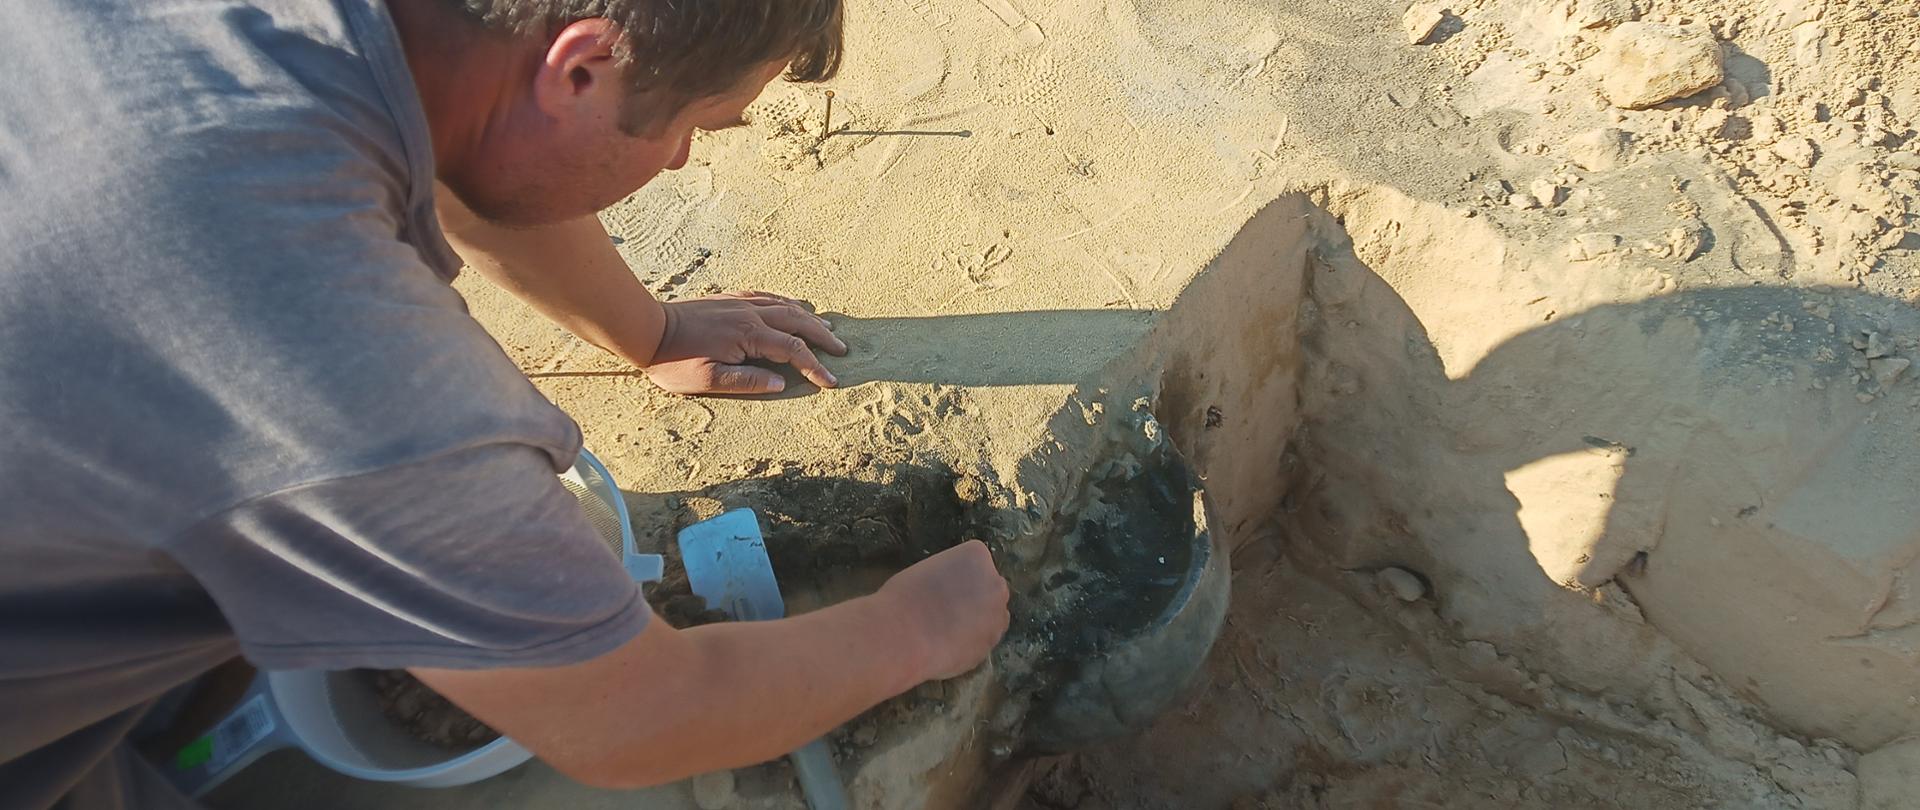 DK73 obwodnica Morawicy - badania archeologiczne - archeolog wykopujący urnę z ziemi, sitko, łopatka, z gruntu wystaje połowa urny 